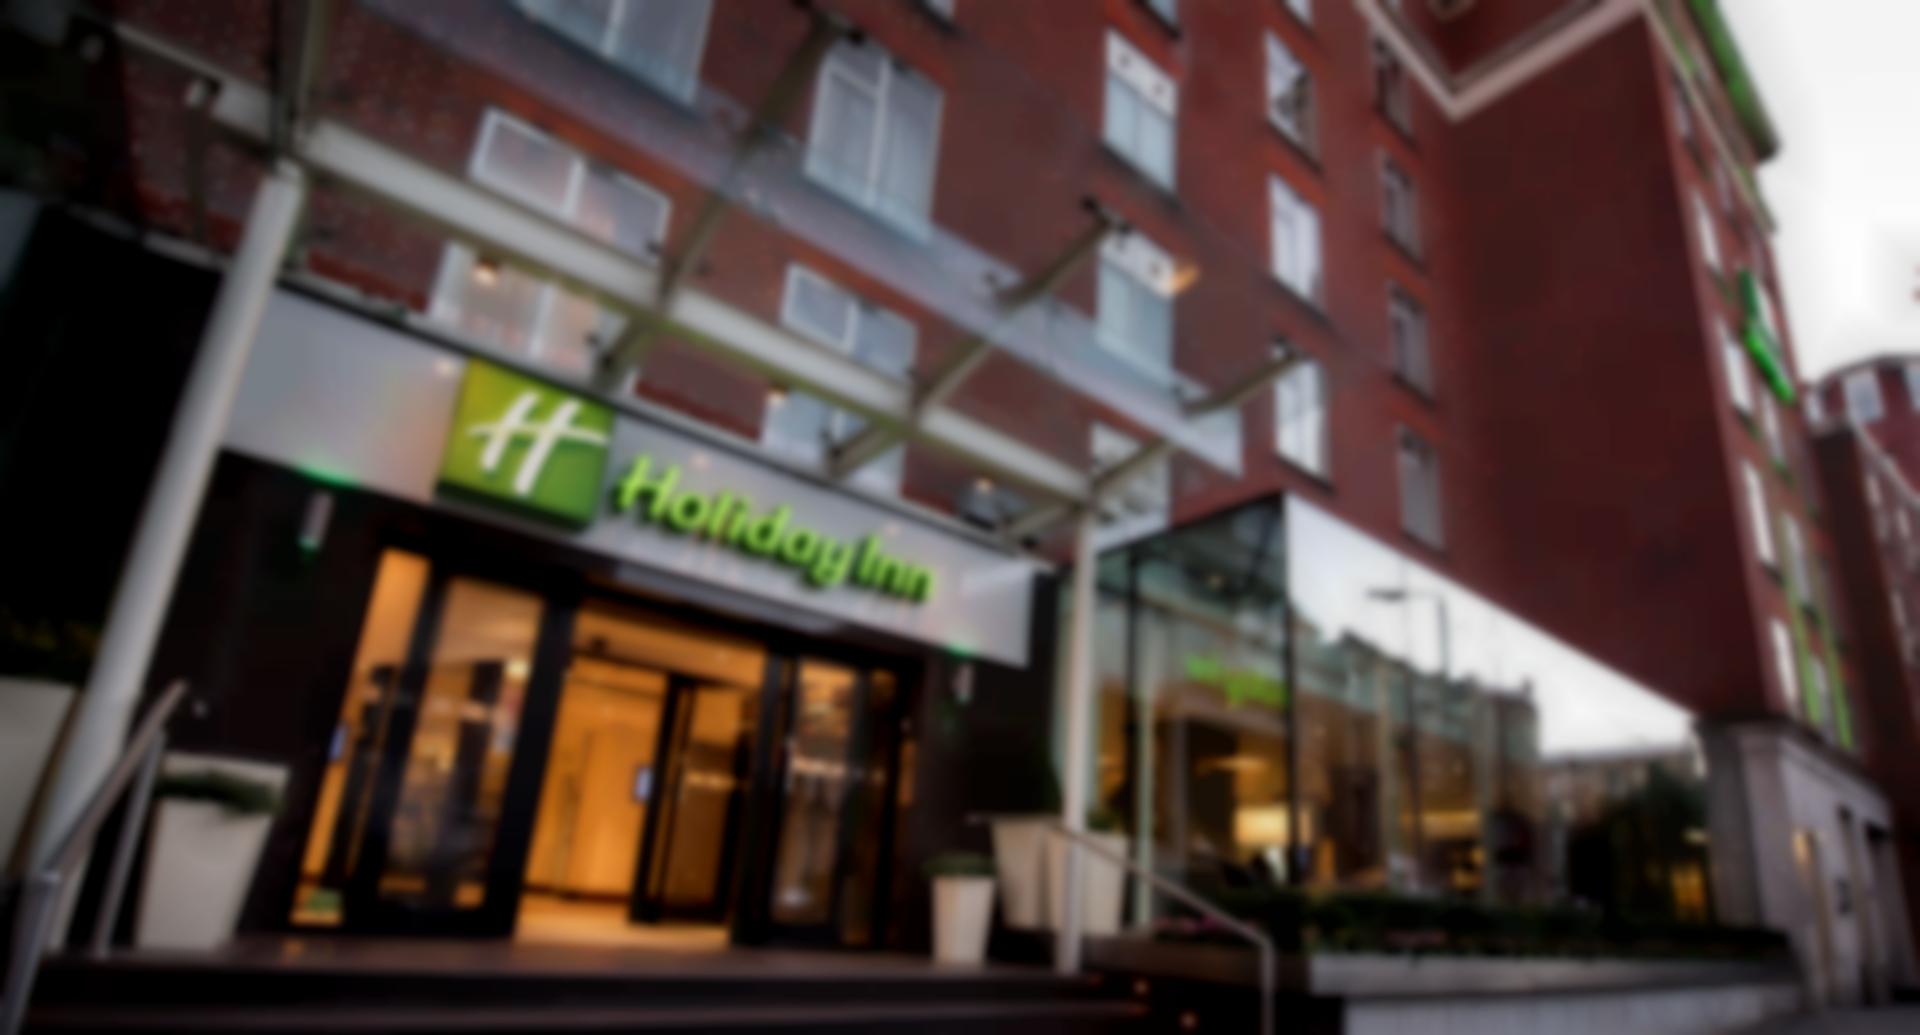 Holiday Inn London - Kensington High St., an IHG Hotel